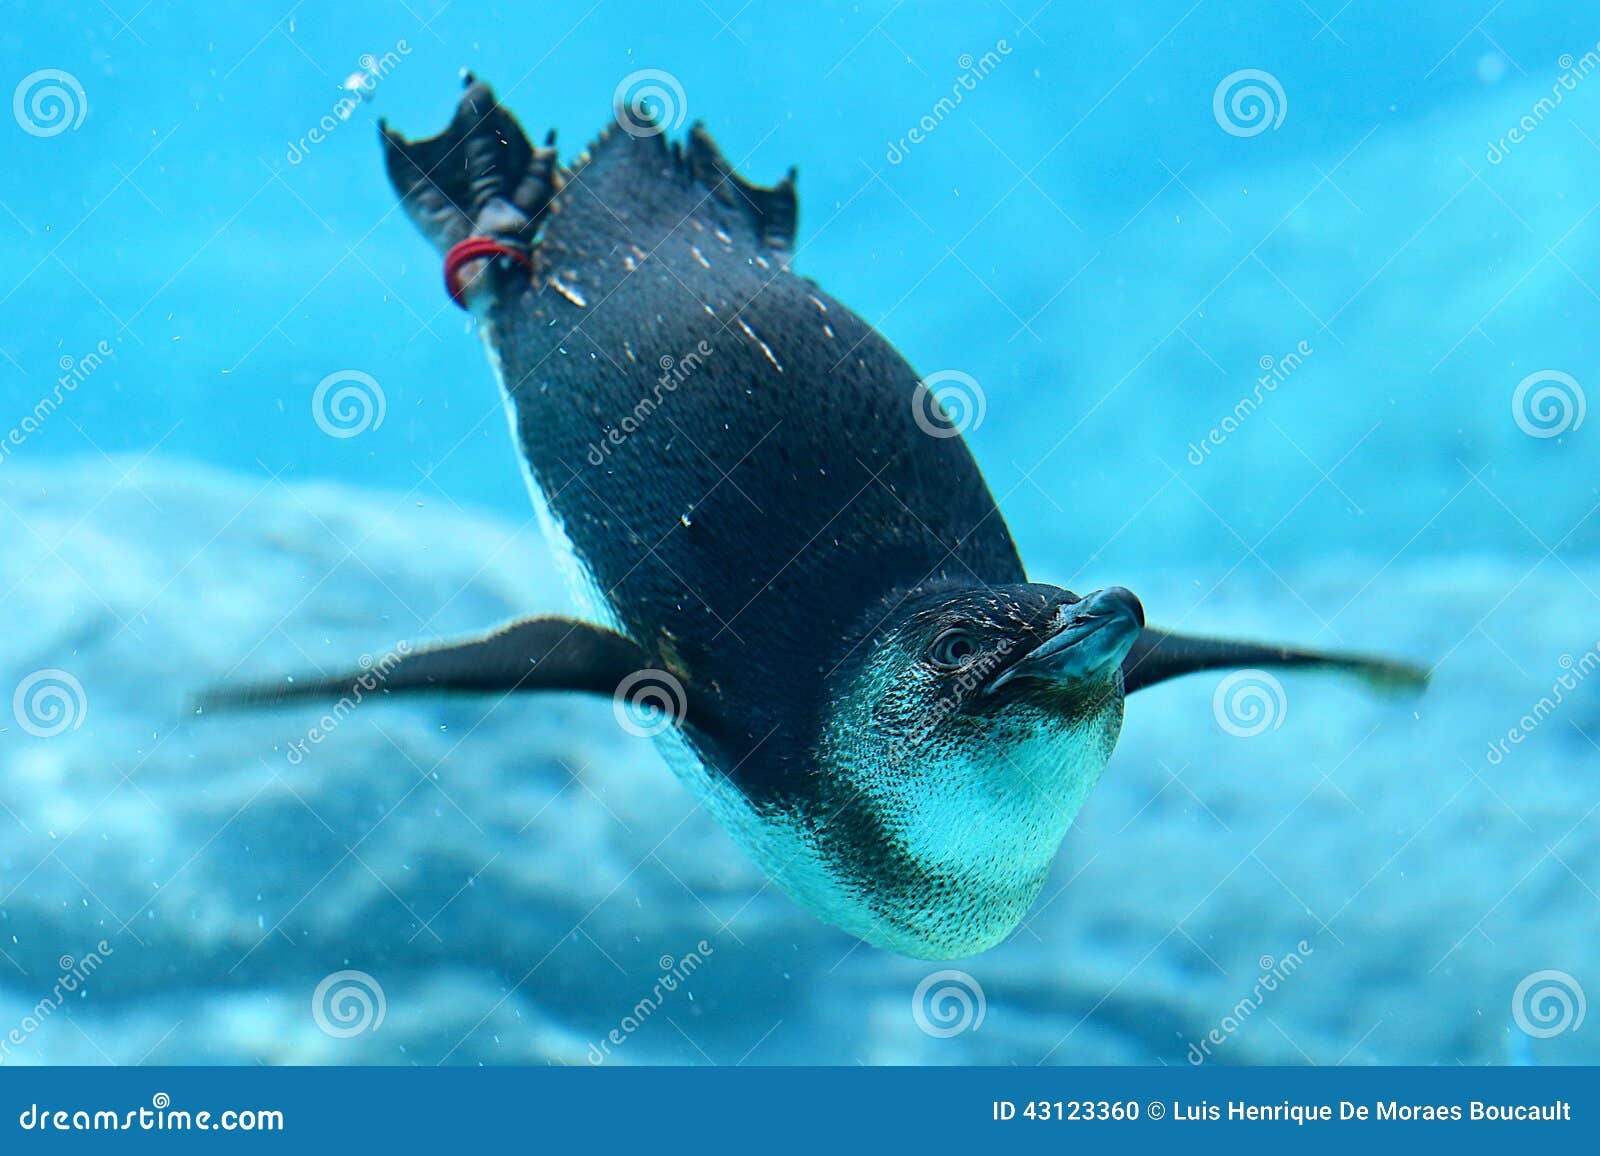 penguin & sydney aquarium